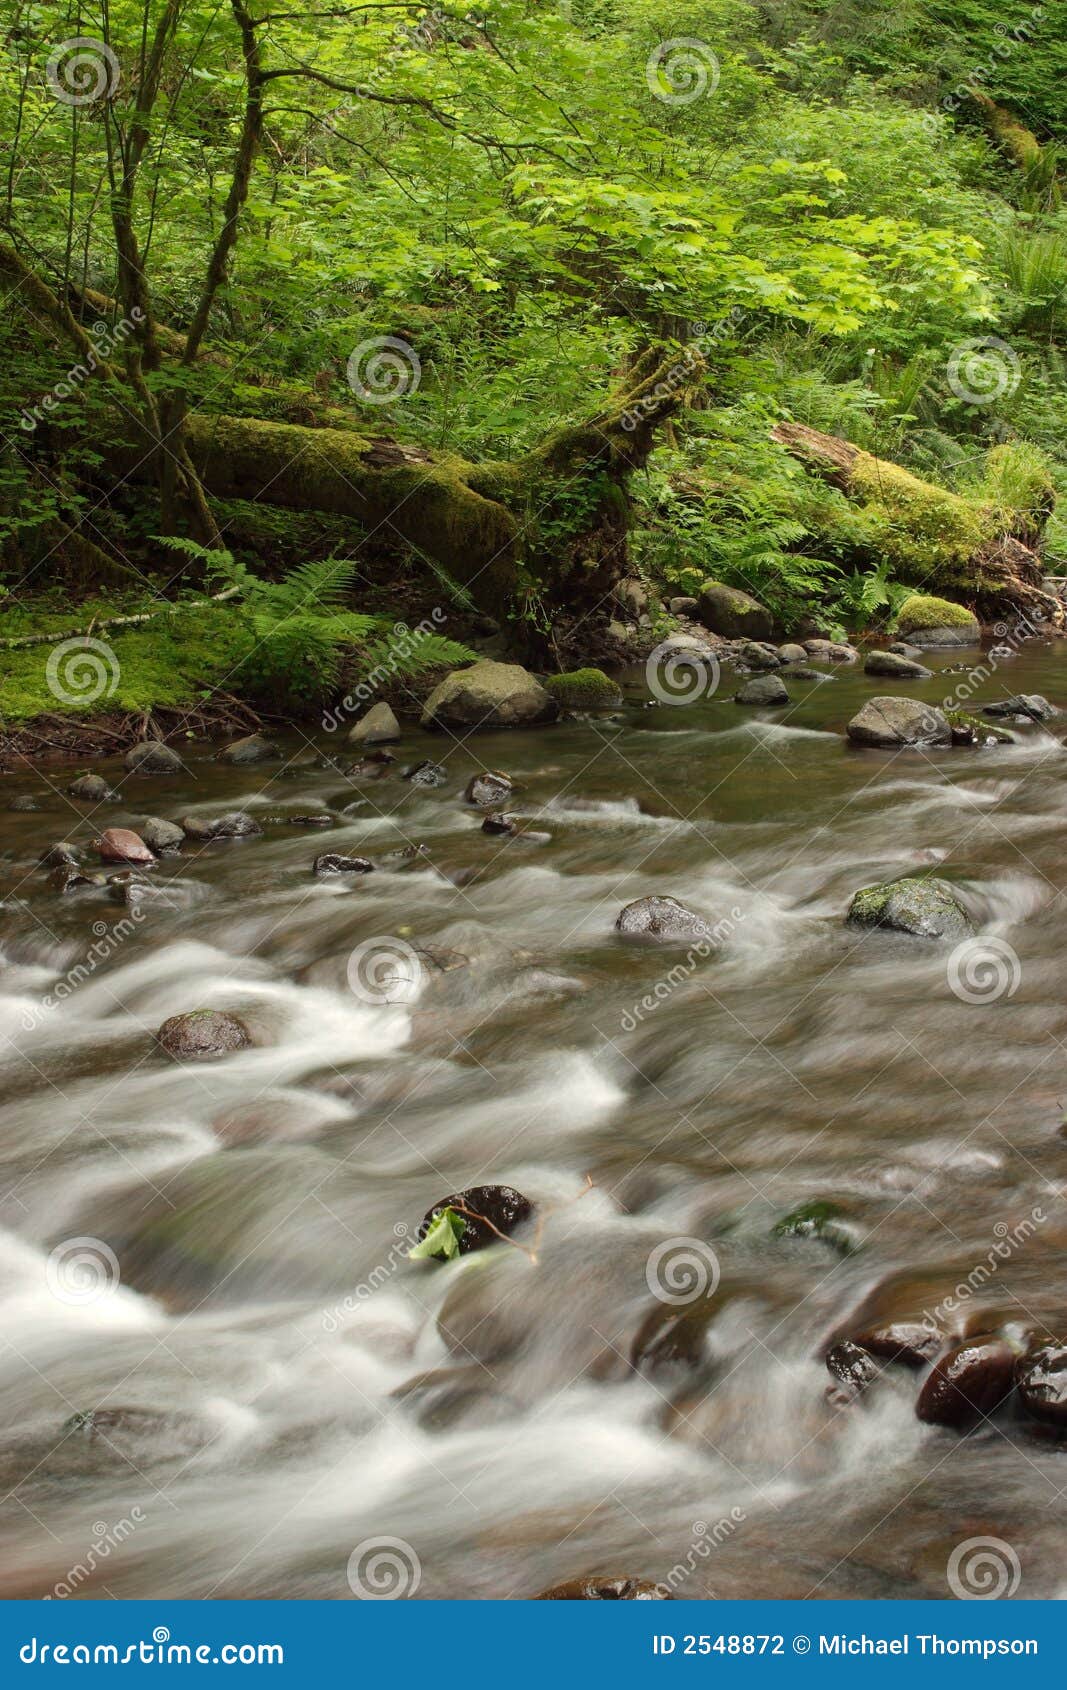 gales creek